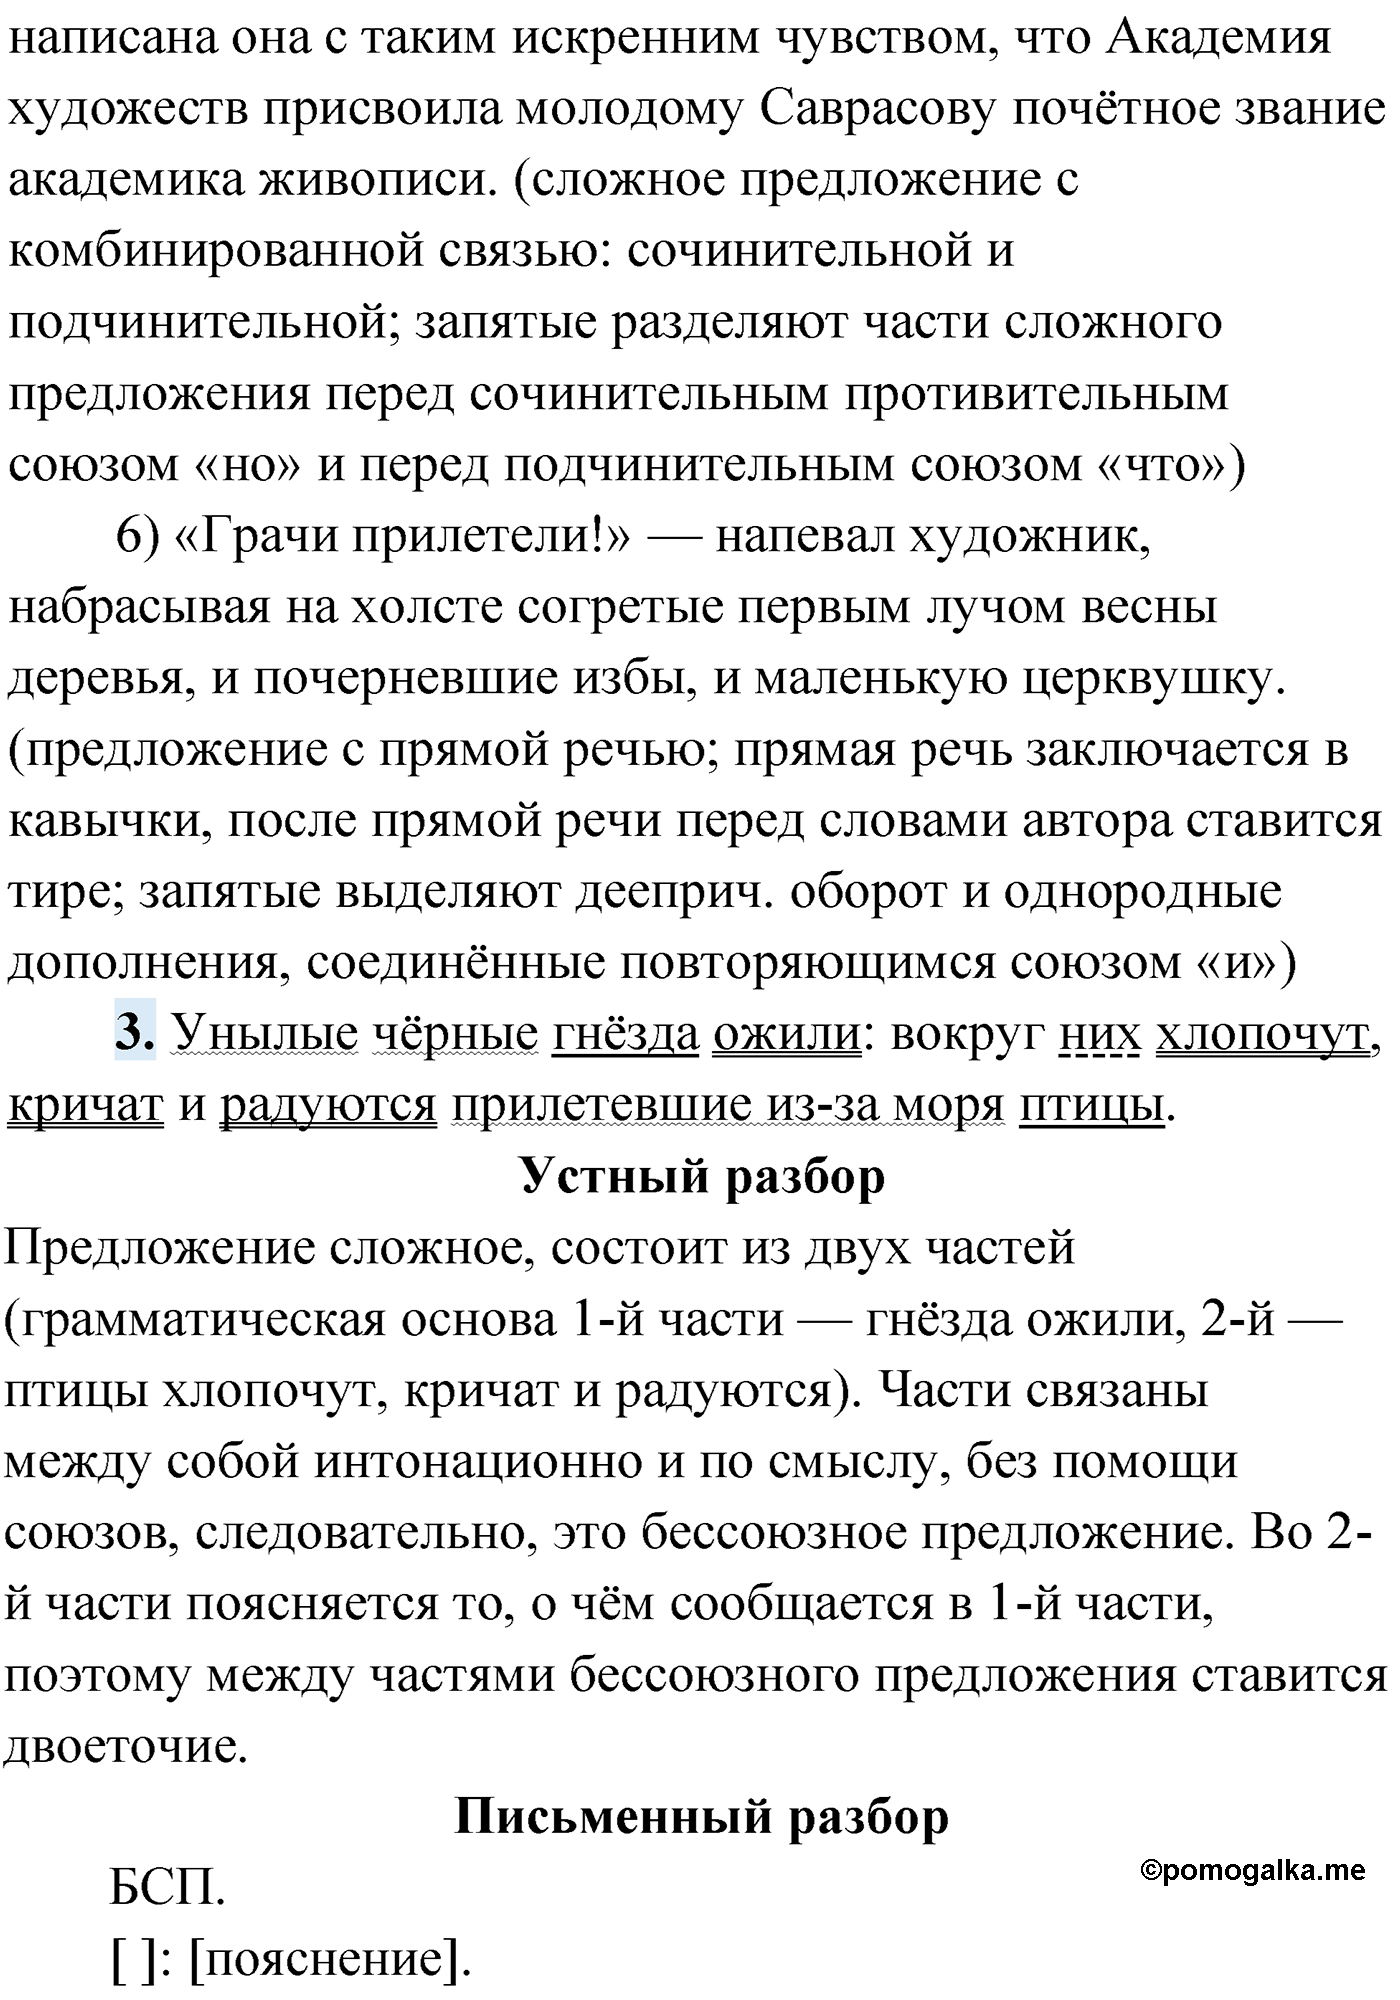 упражнение №316 русский язык 9 класс Мурина 2019 год